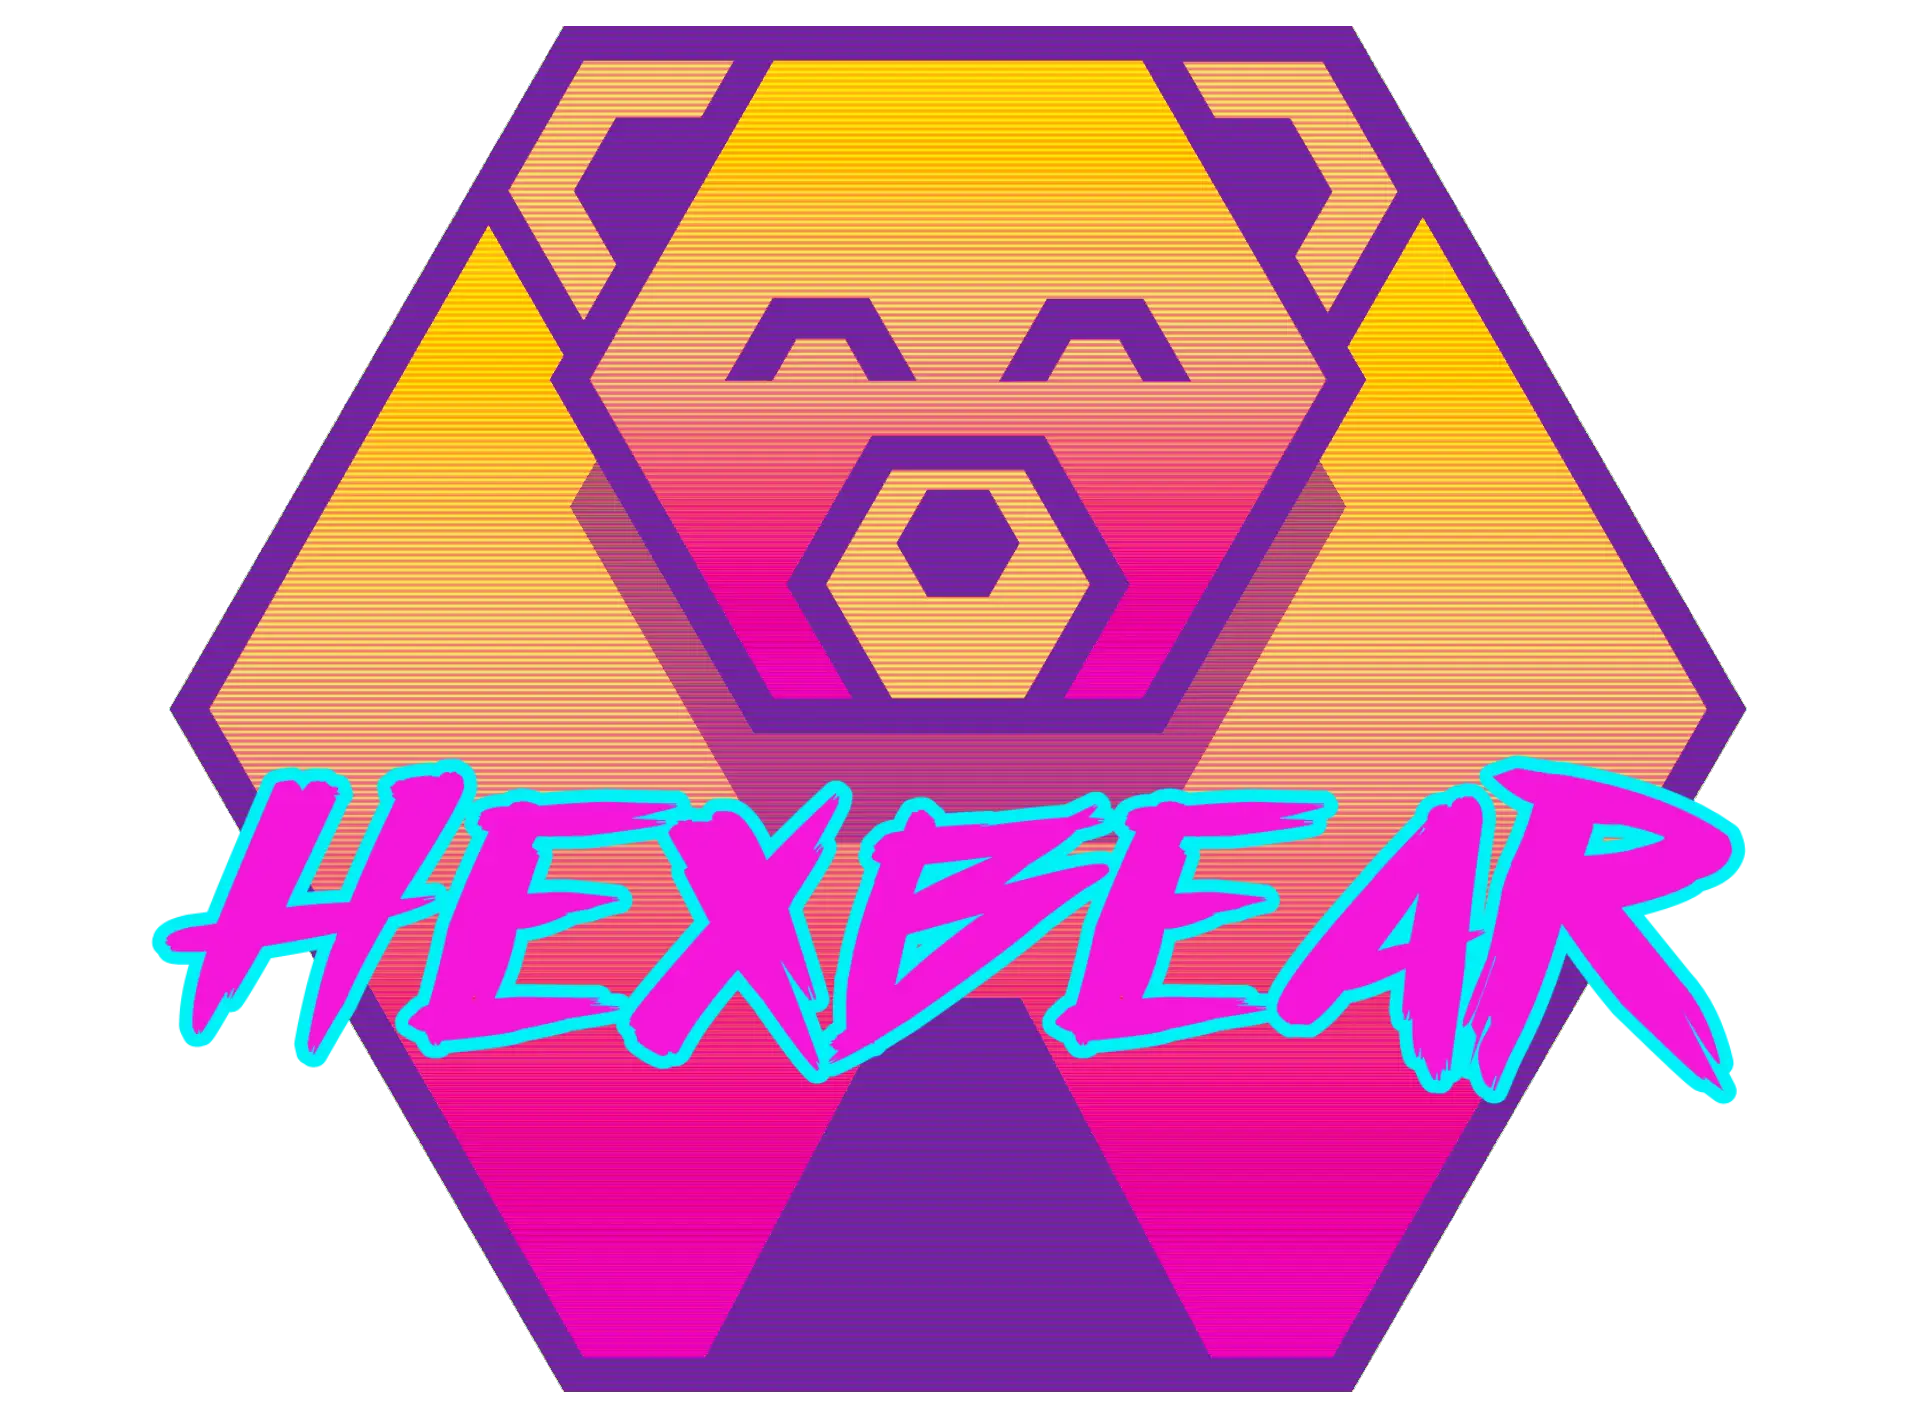 Hexbear logo.png